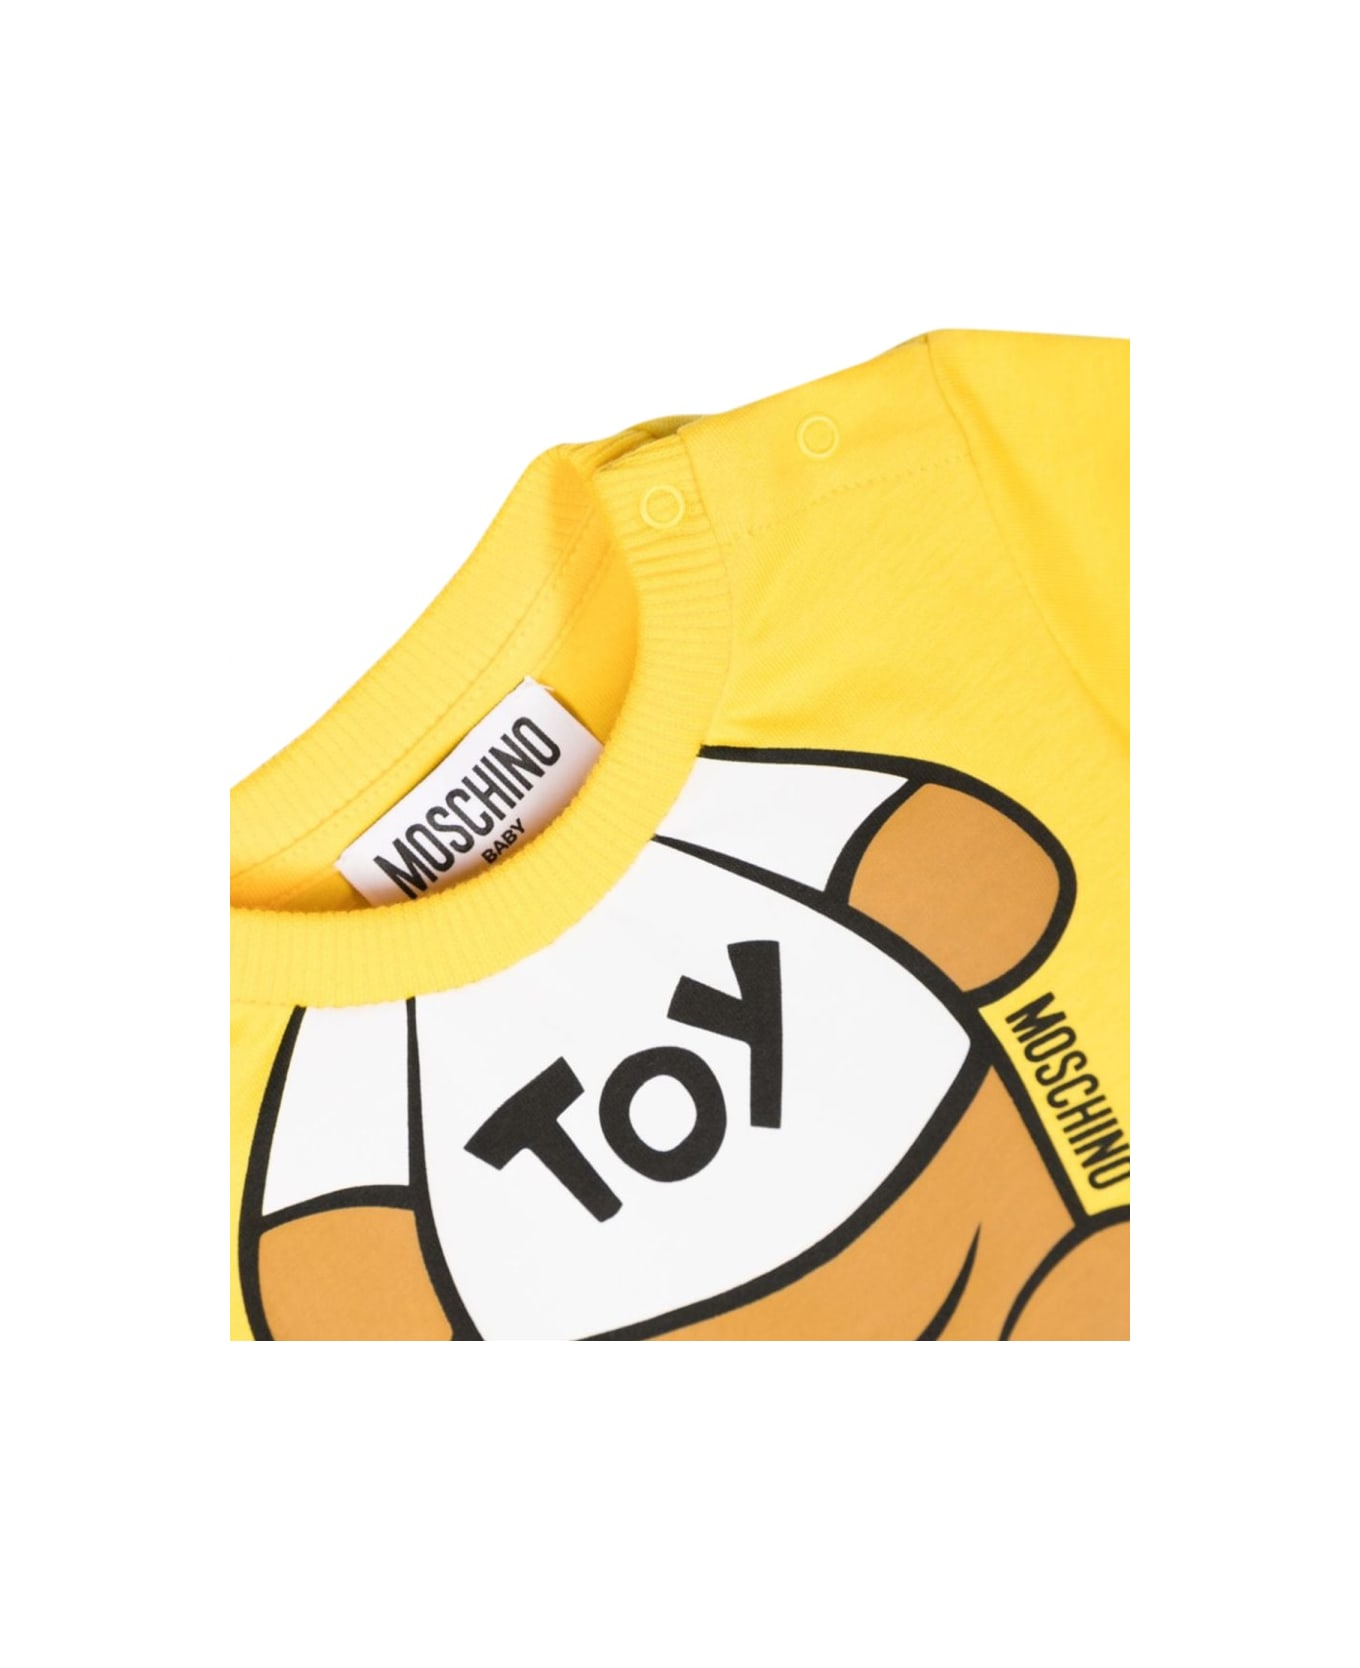 Moschino T-shirt - YELLOW